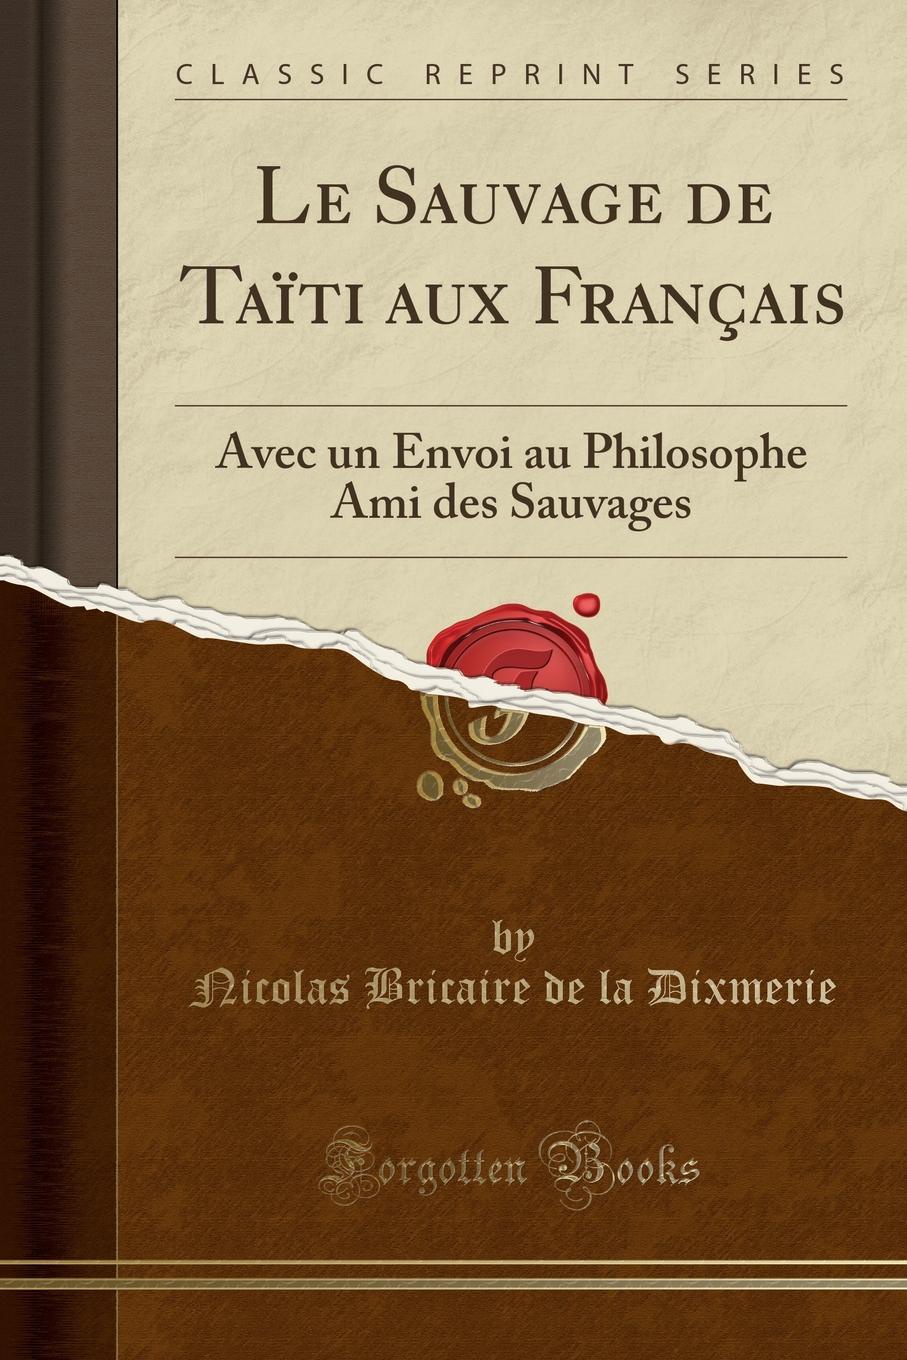 Nicolas Bricaire de la Dixmerie Le Sauvage de Taiti aux Francais. Avec un Envoi au Philosophe Ami des Sauvages (Classic Reprint)